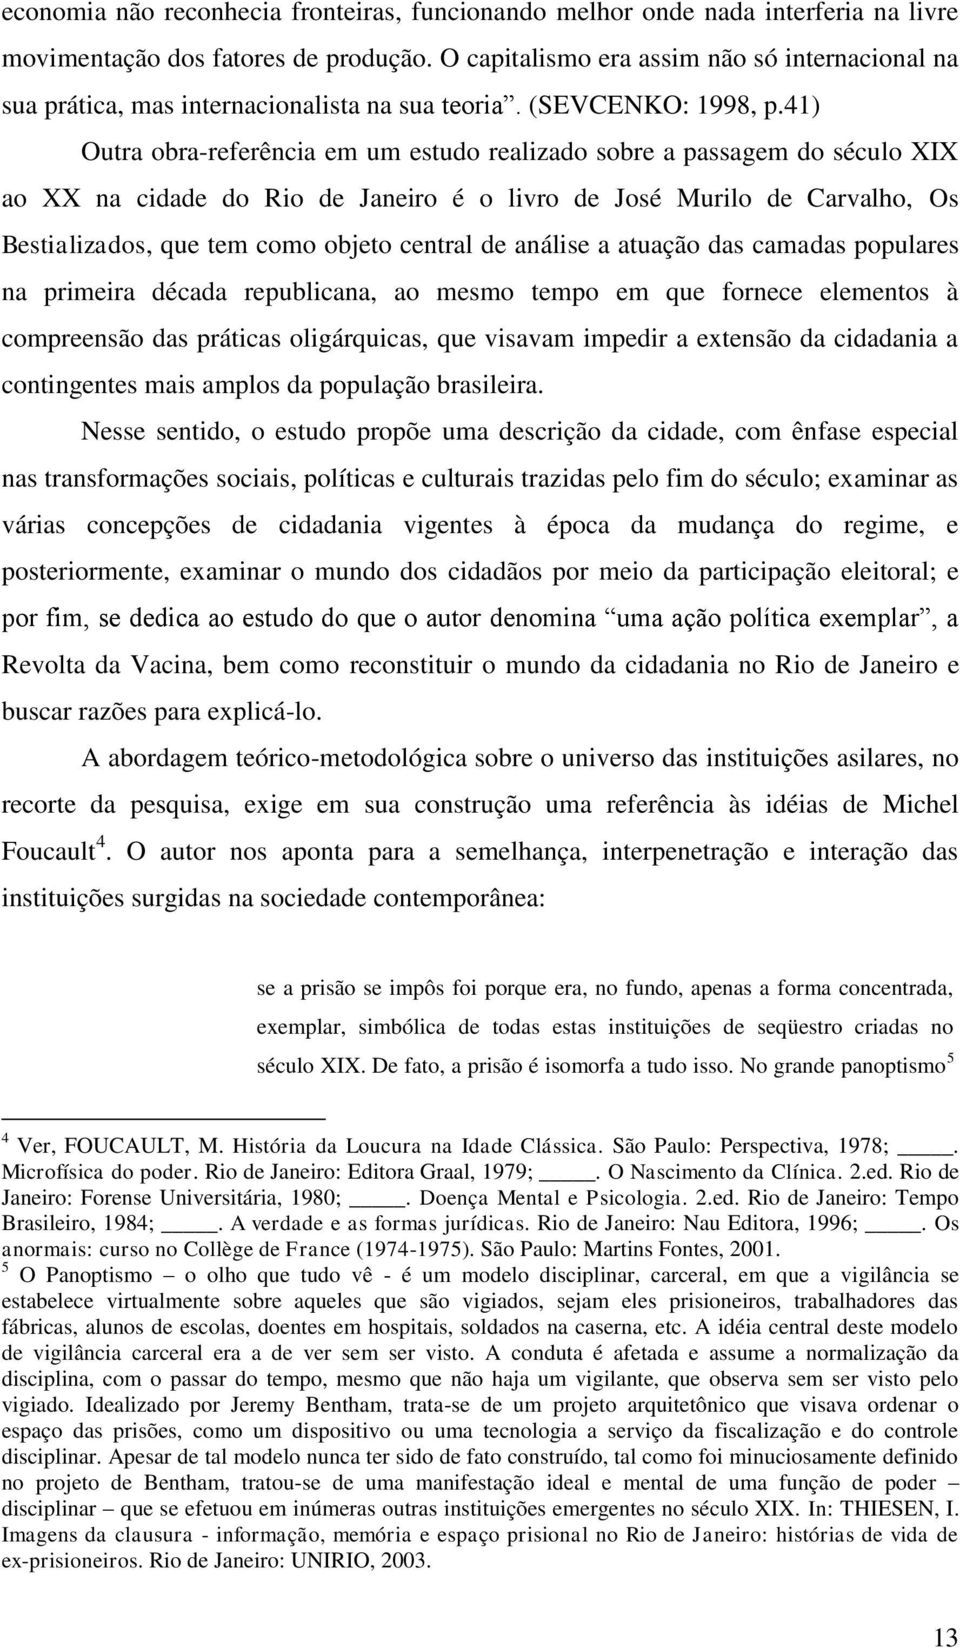 41) Outra obra-referência em um estudo realizado sobre a passagem do século XIX ao XX na cidade do Rio de Janeiro é o livro de José Murilo de Carvalho, Os Bestializados, que tem como objeto central